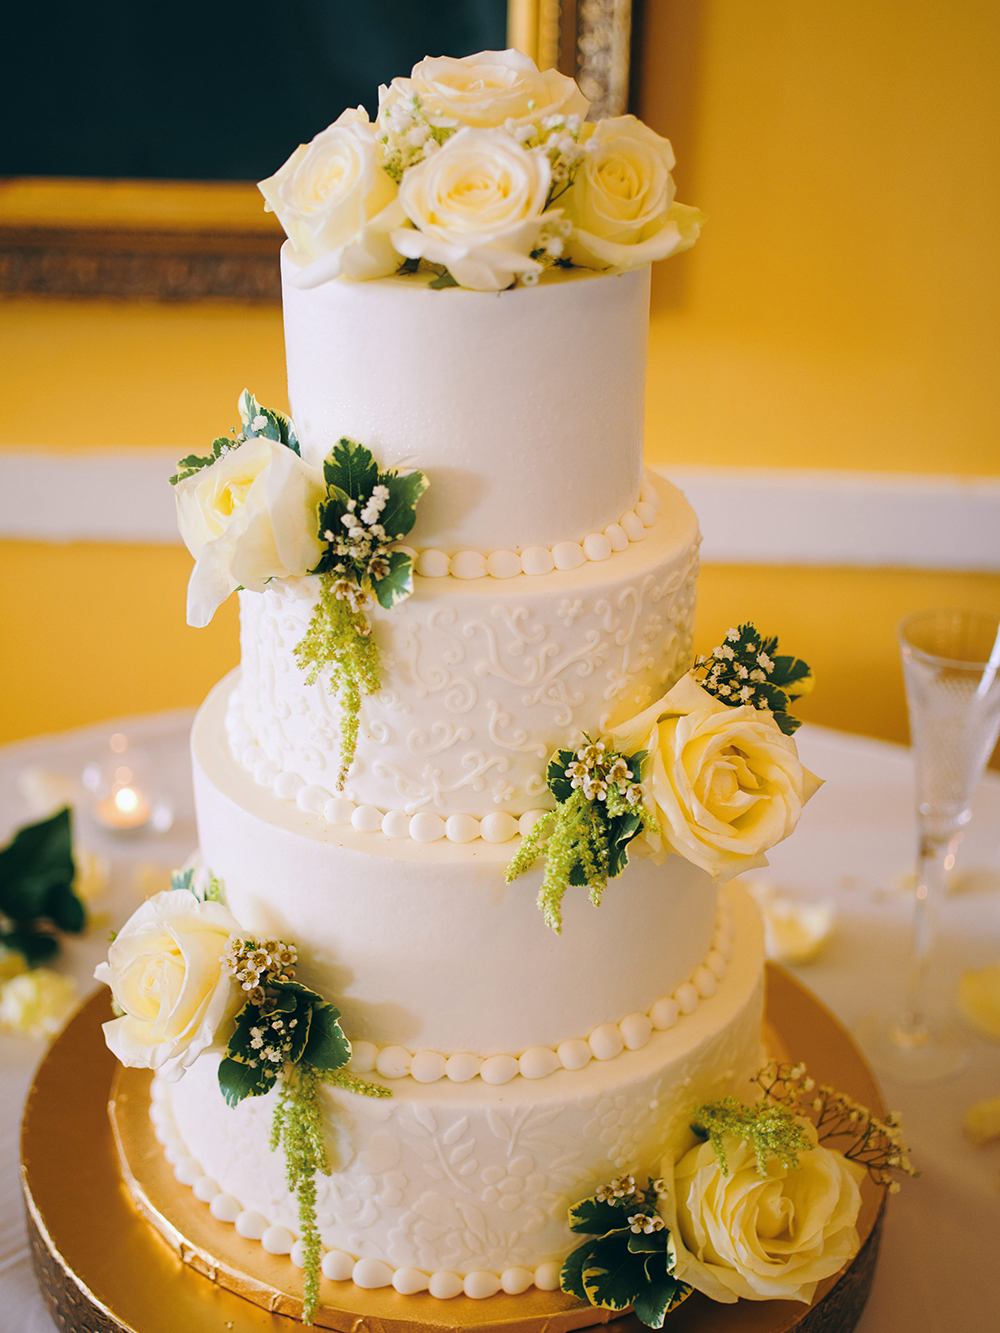 wedding cake - white - classic - roses